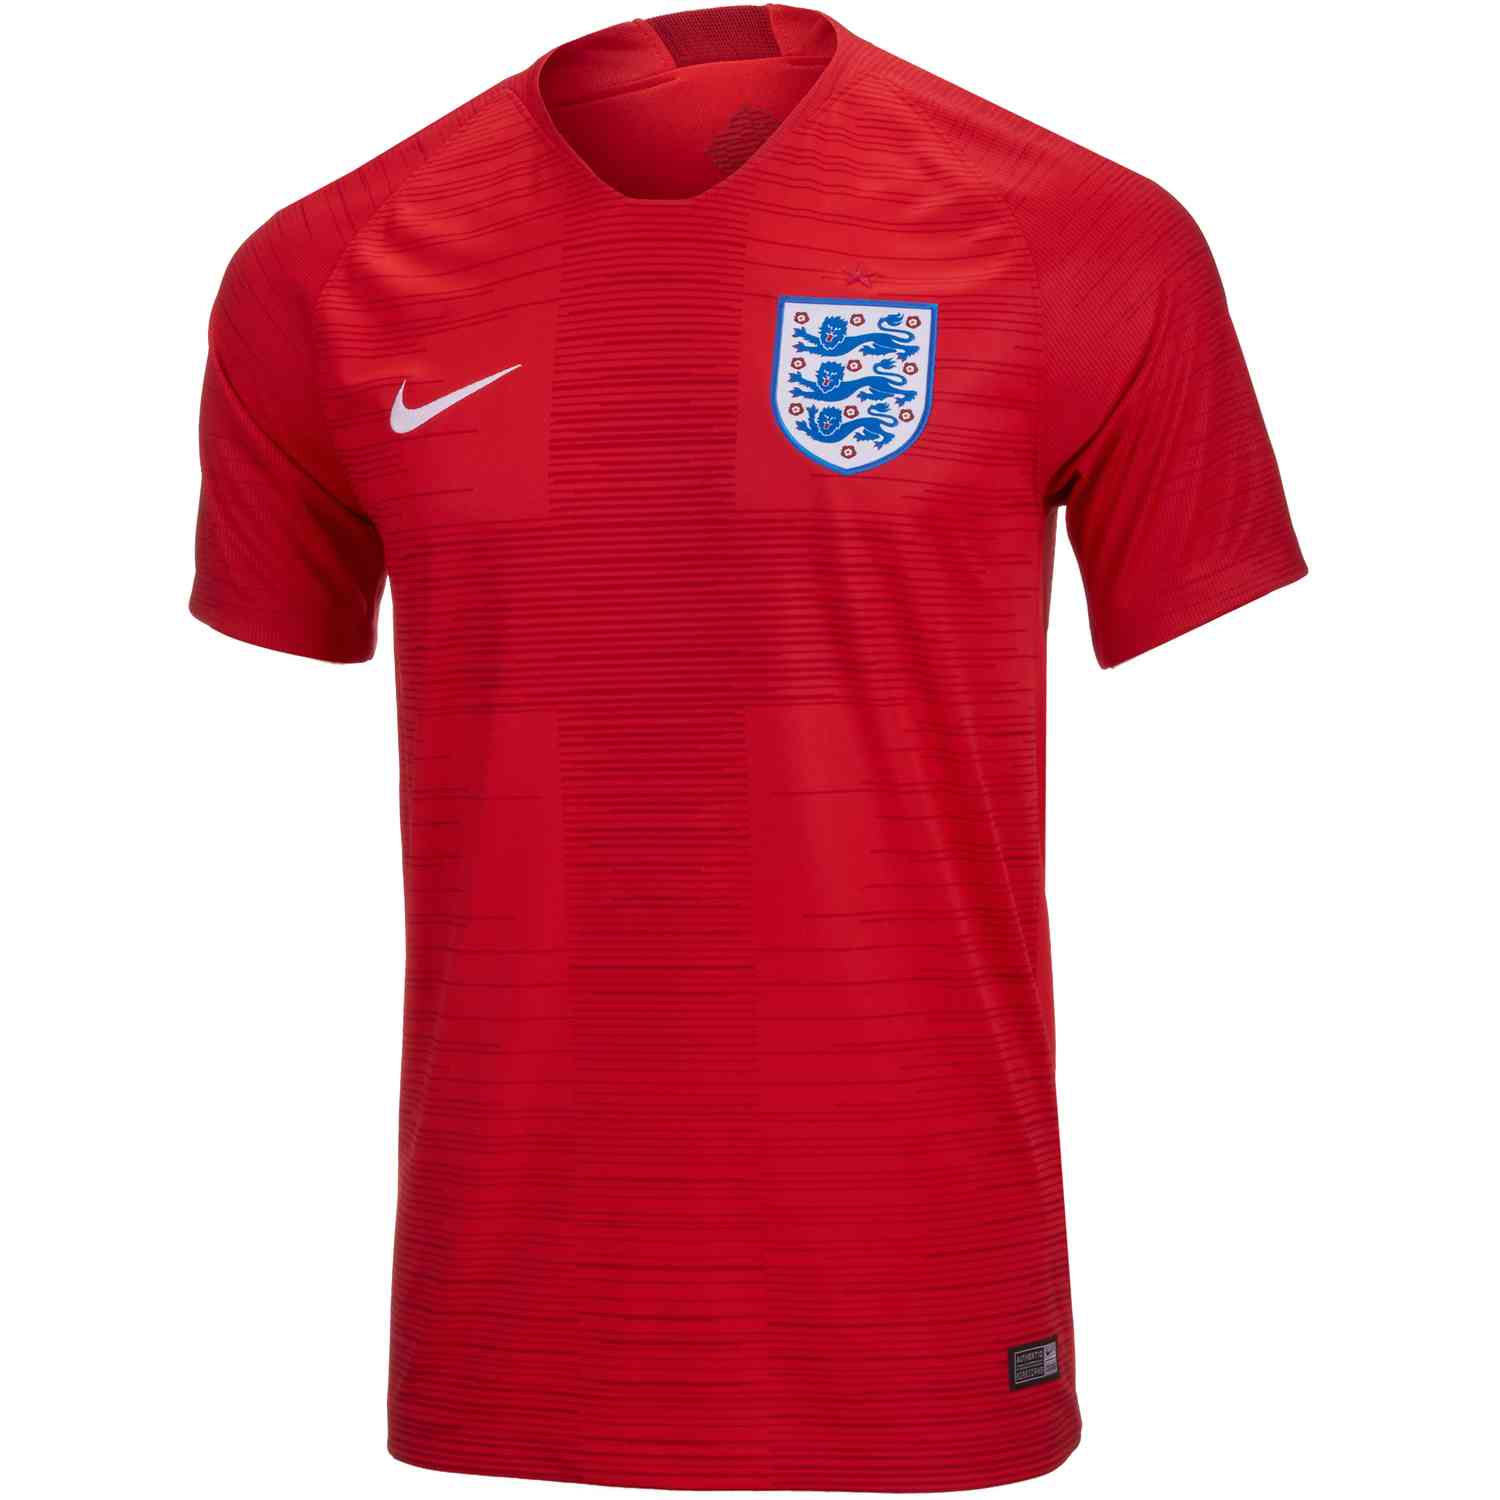 2018/19 Kids Nike England Away Jersey - SoccerPro